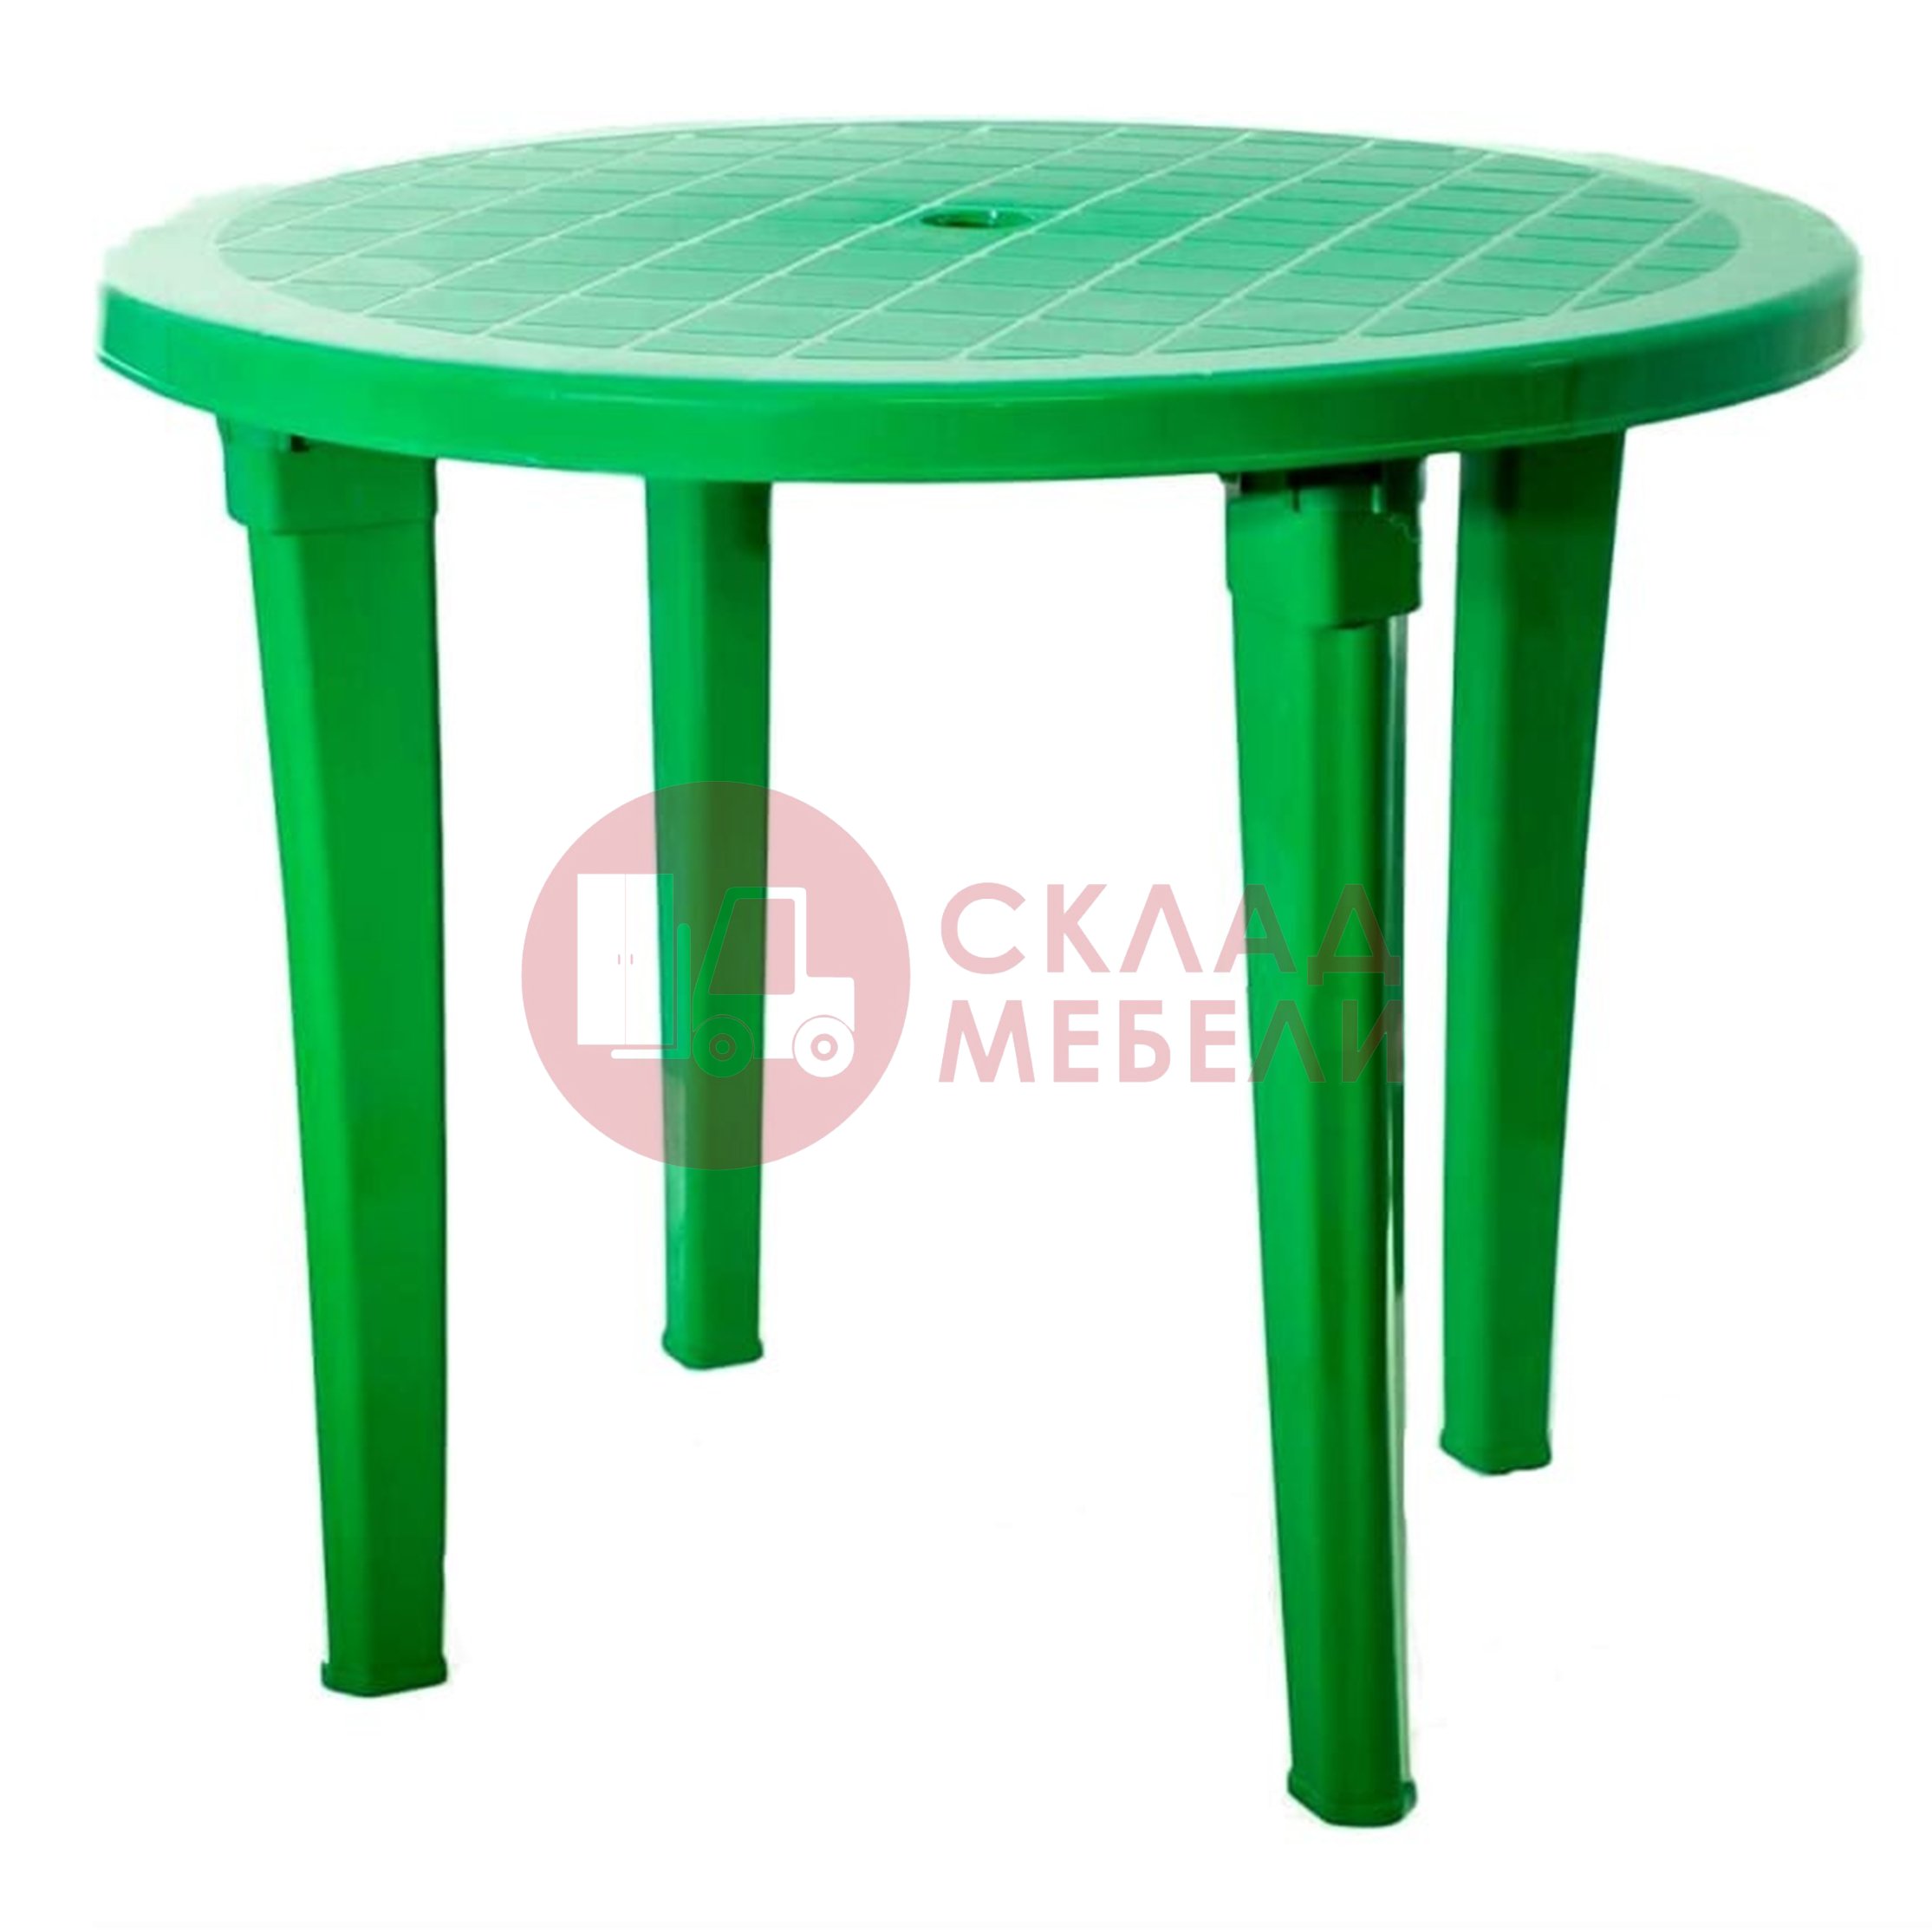 Пластиковый стол со скамейками